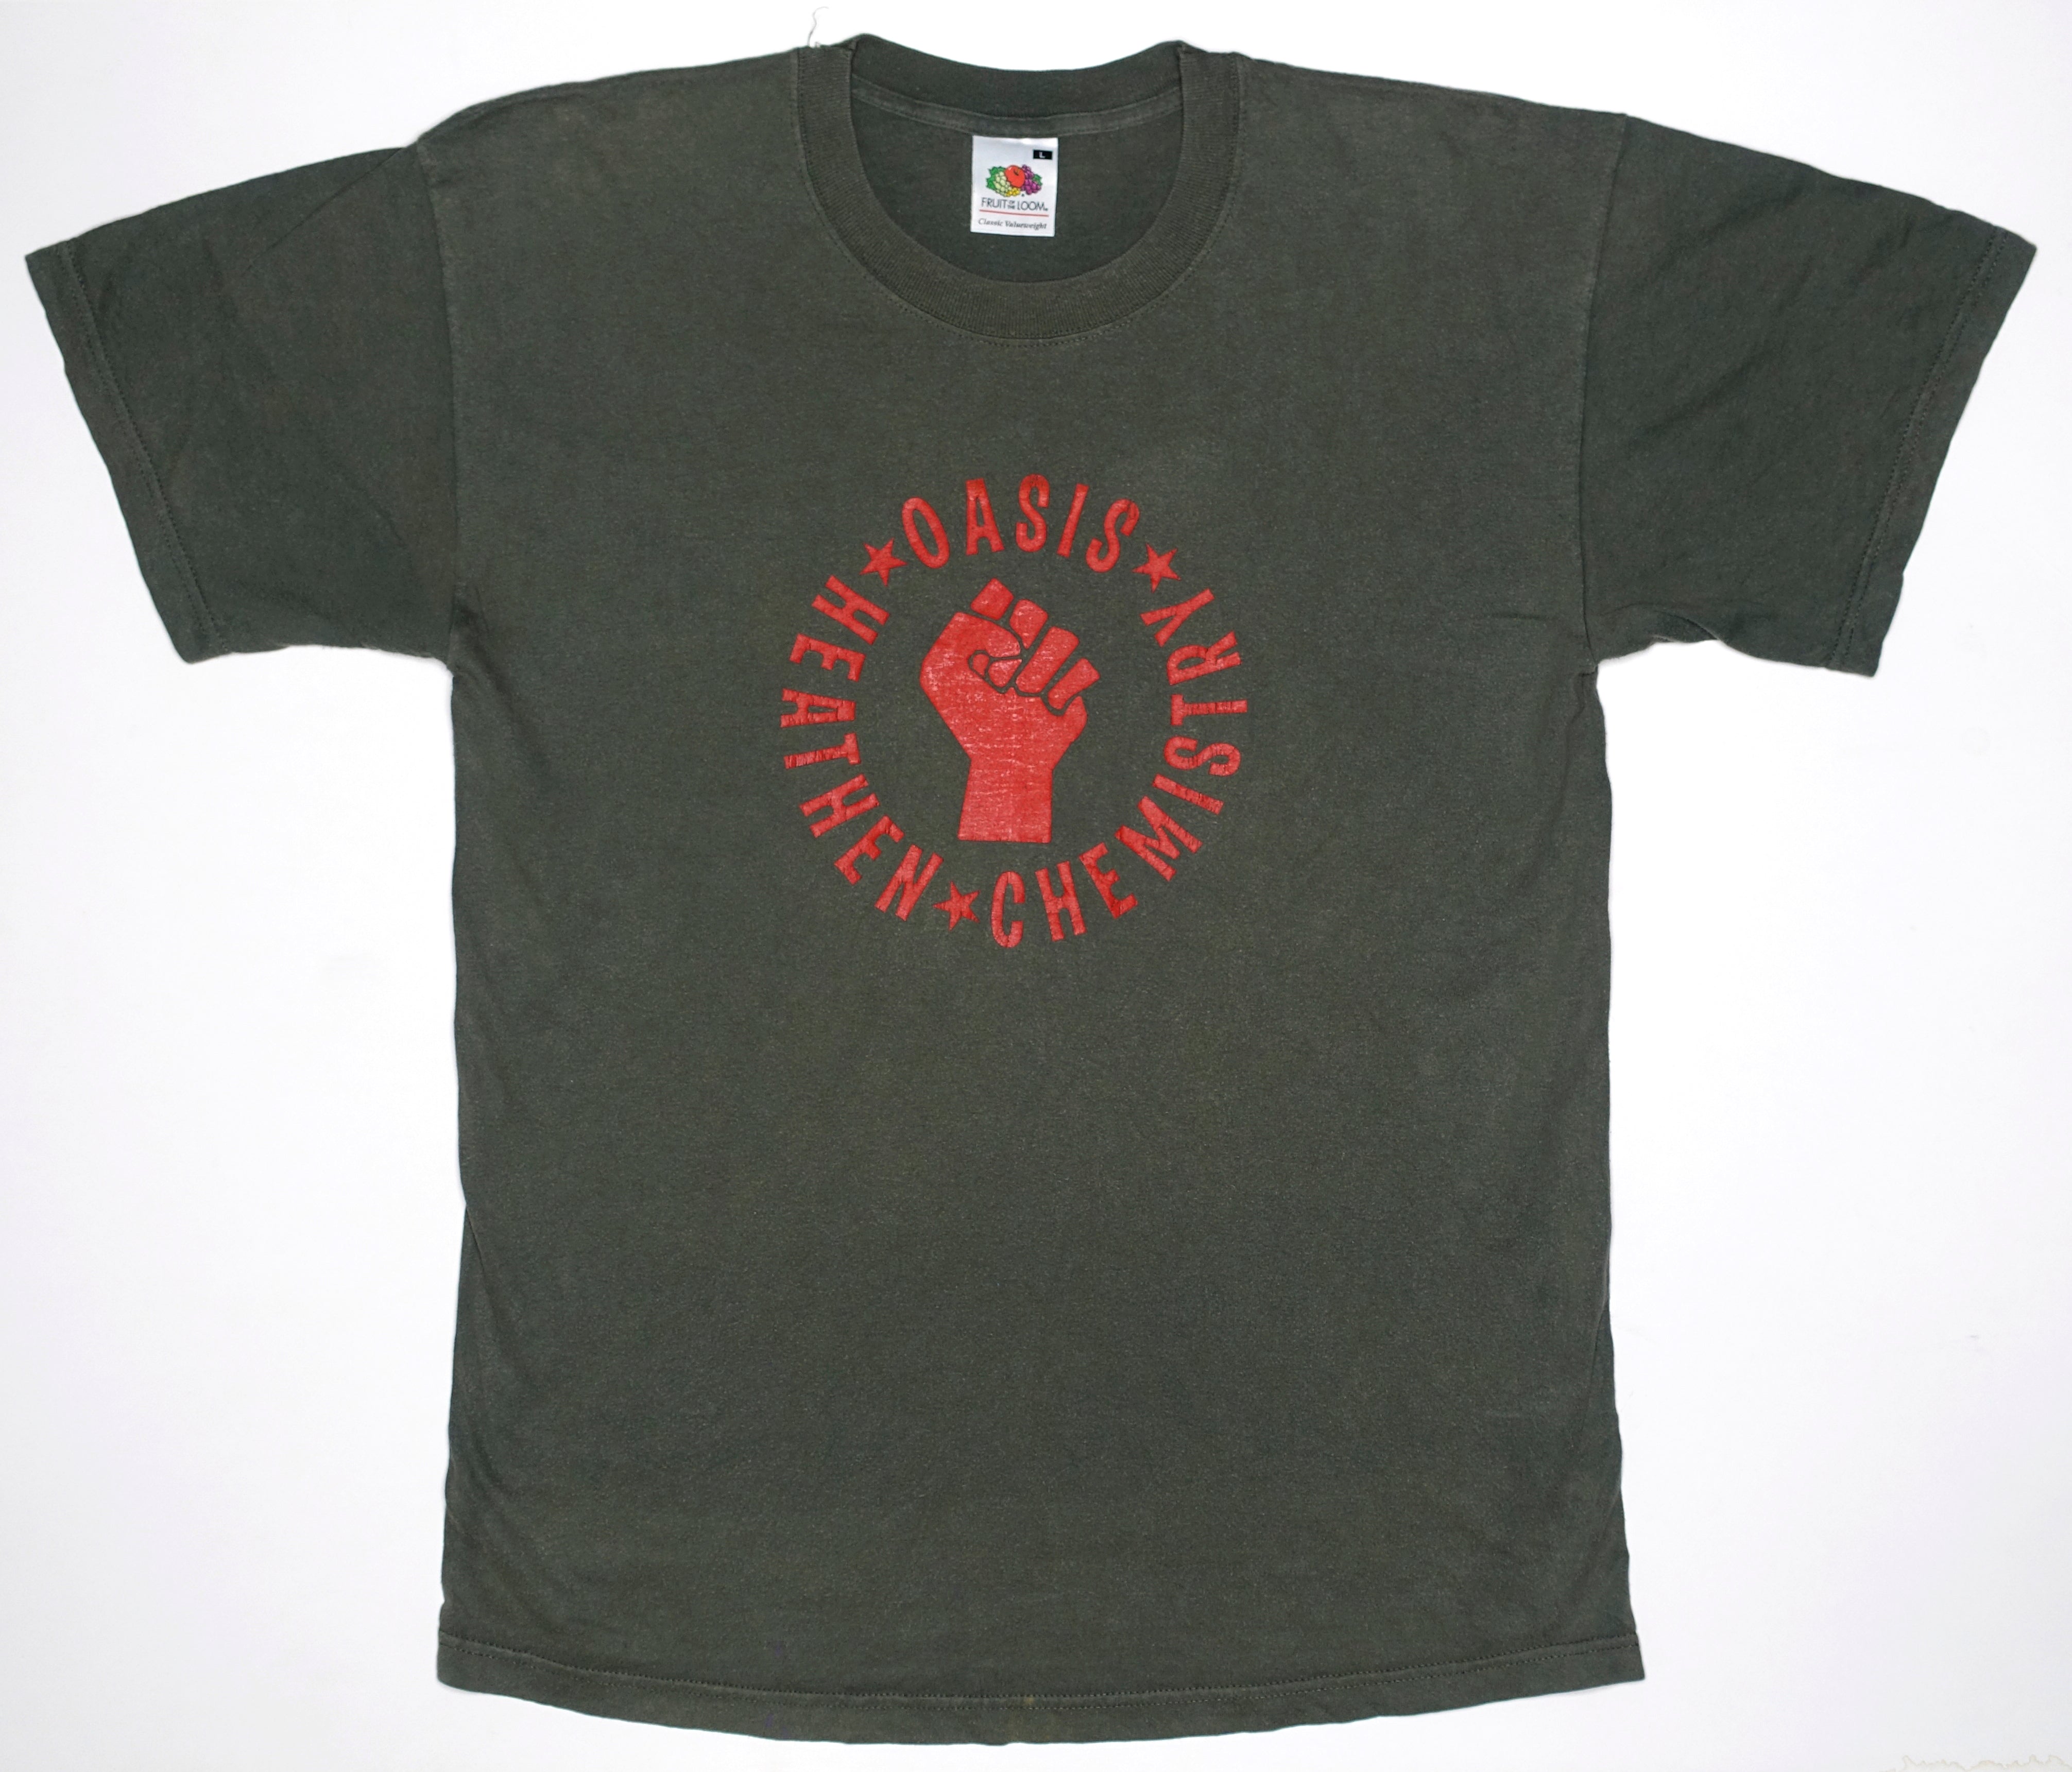 Oasis - Heathen Chemistry "Fist" 2002 Tour Shirt Size Large